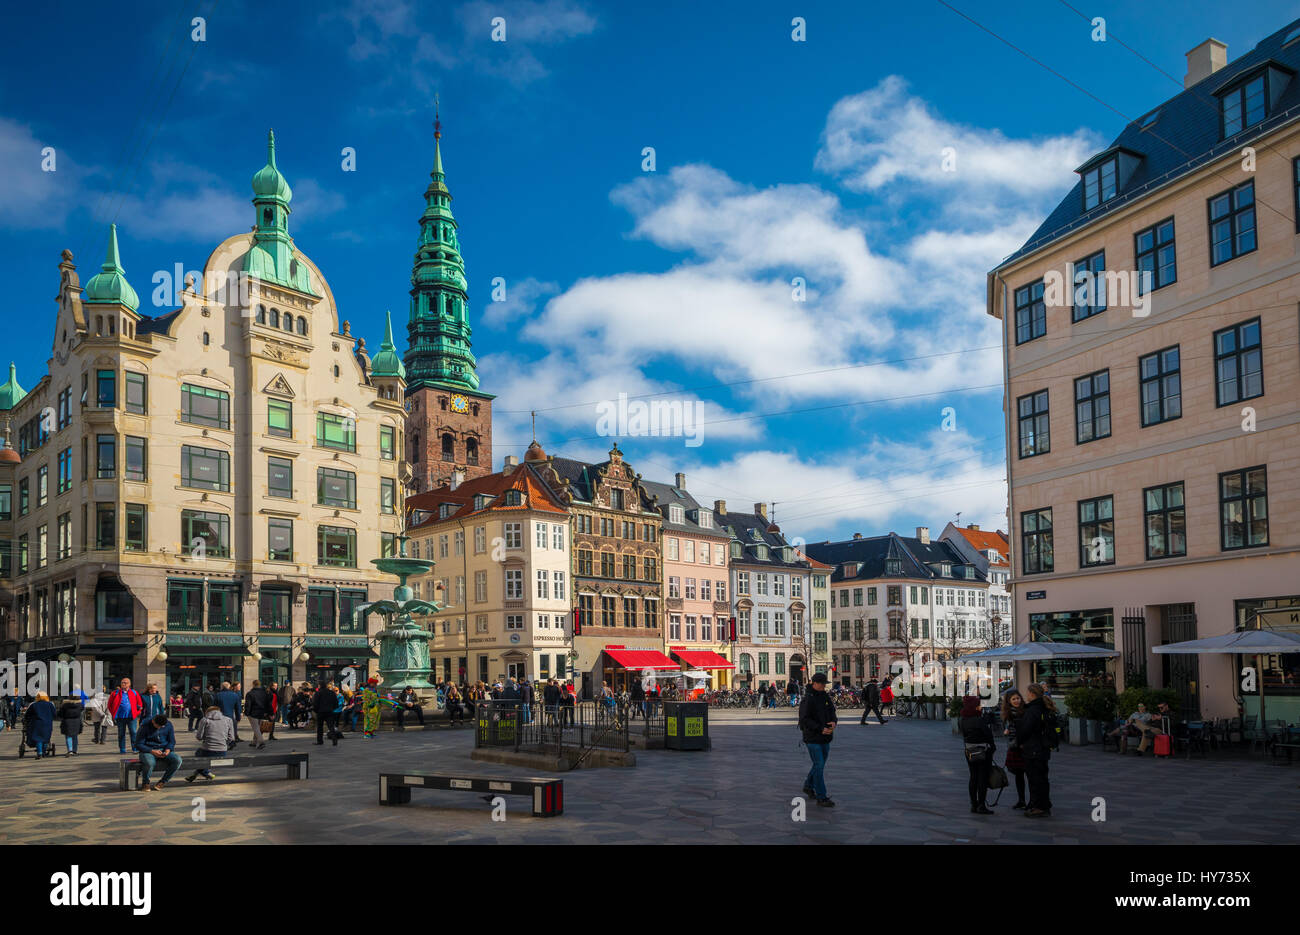 Amagertorv (Englisch: Amager Square), heute Teil der Fußgängerzone Strøget wird oft beschrieben als die zentralsten Platz im Zentrum von Kopenhagen, D Stockfoto